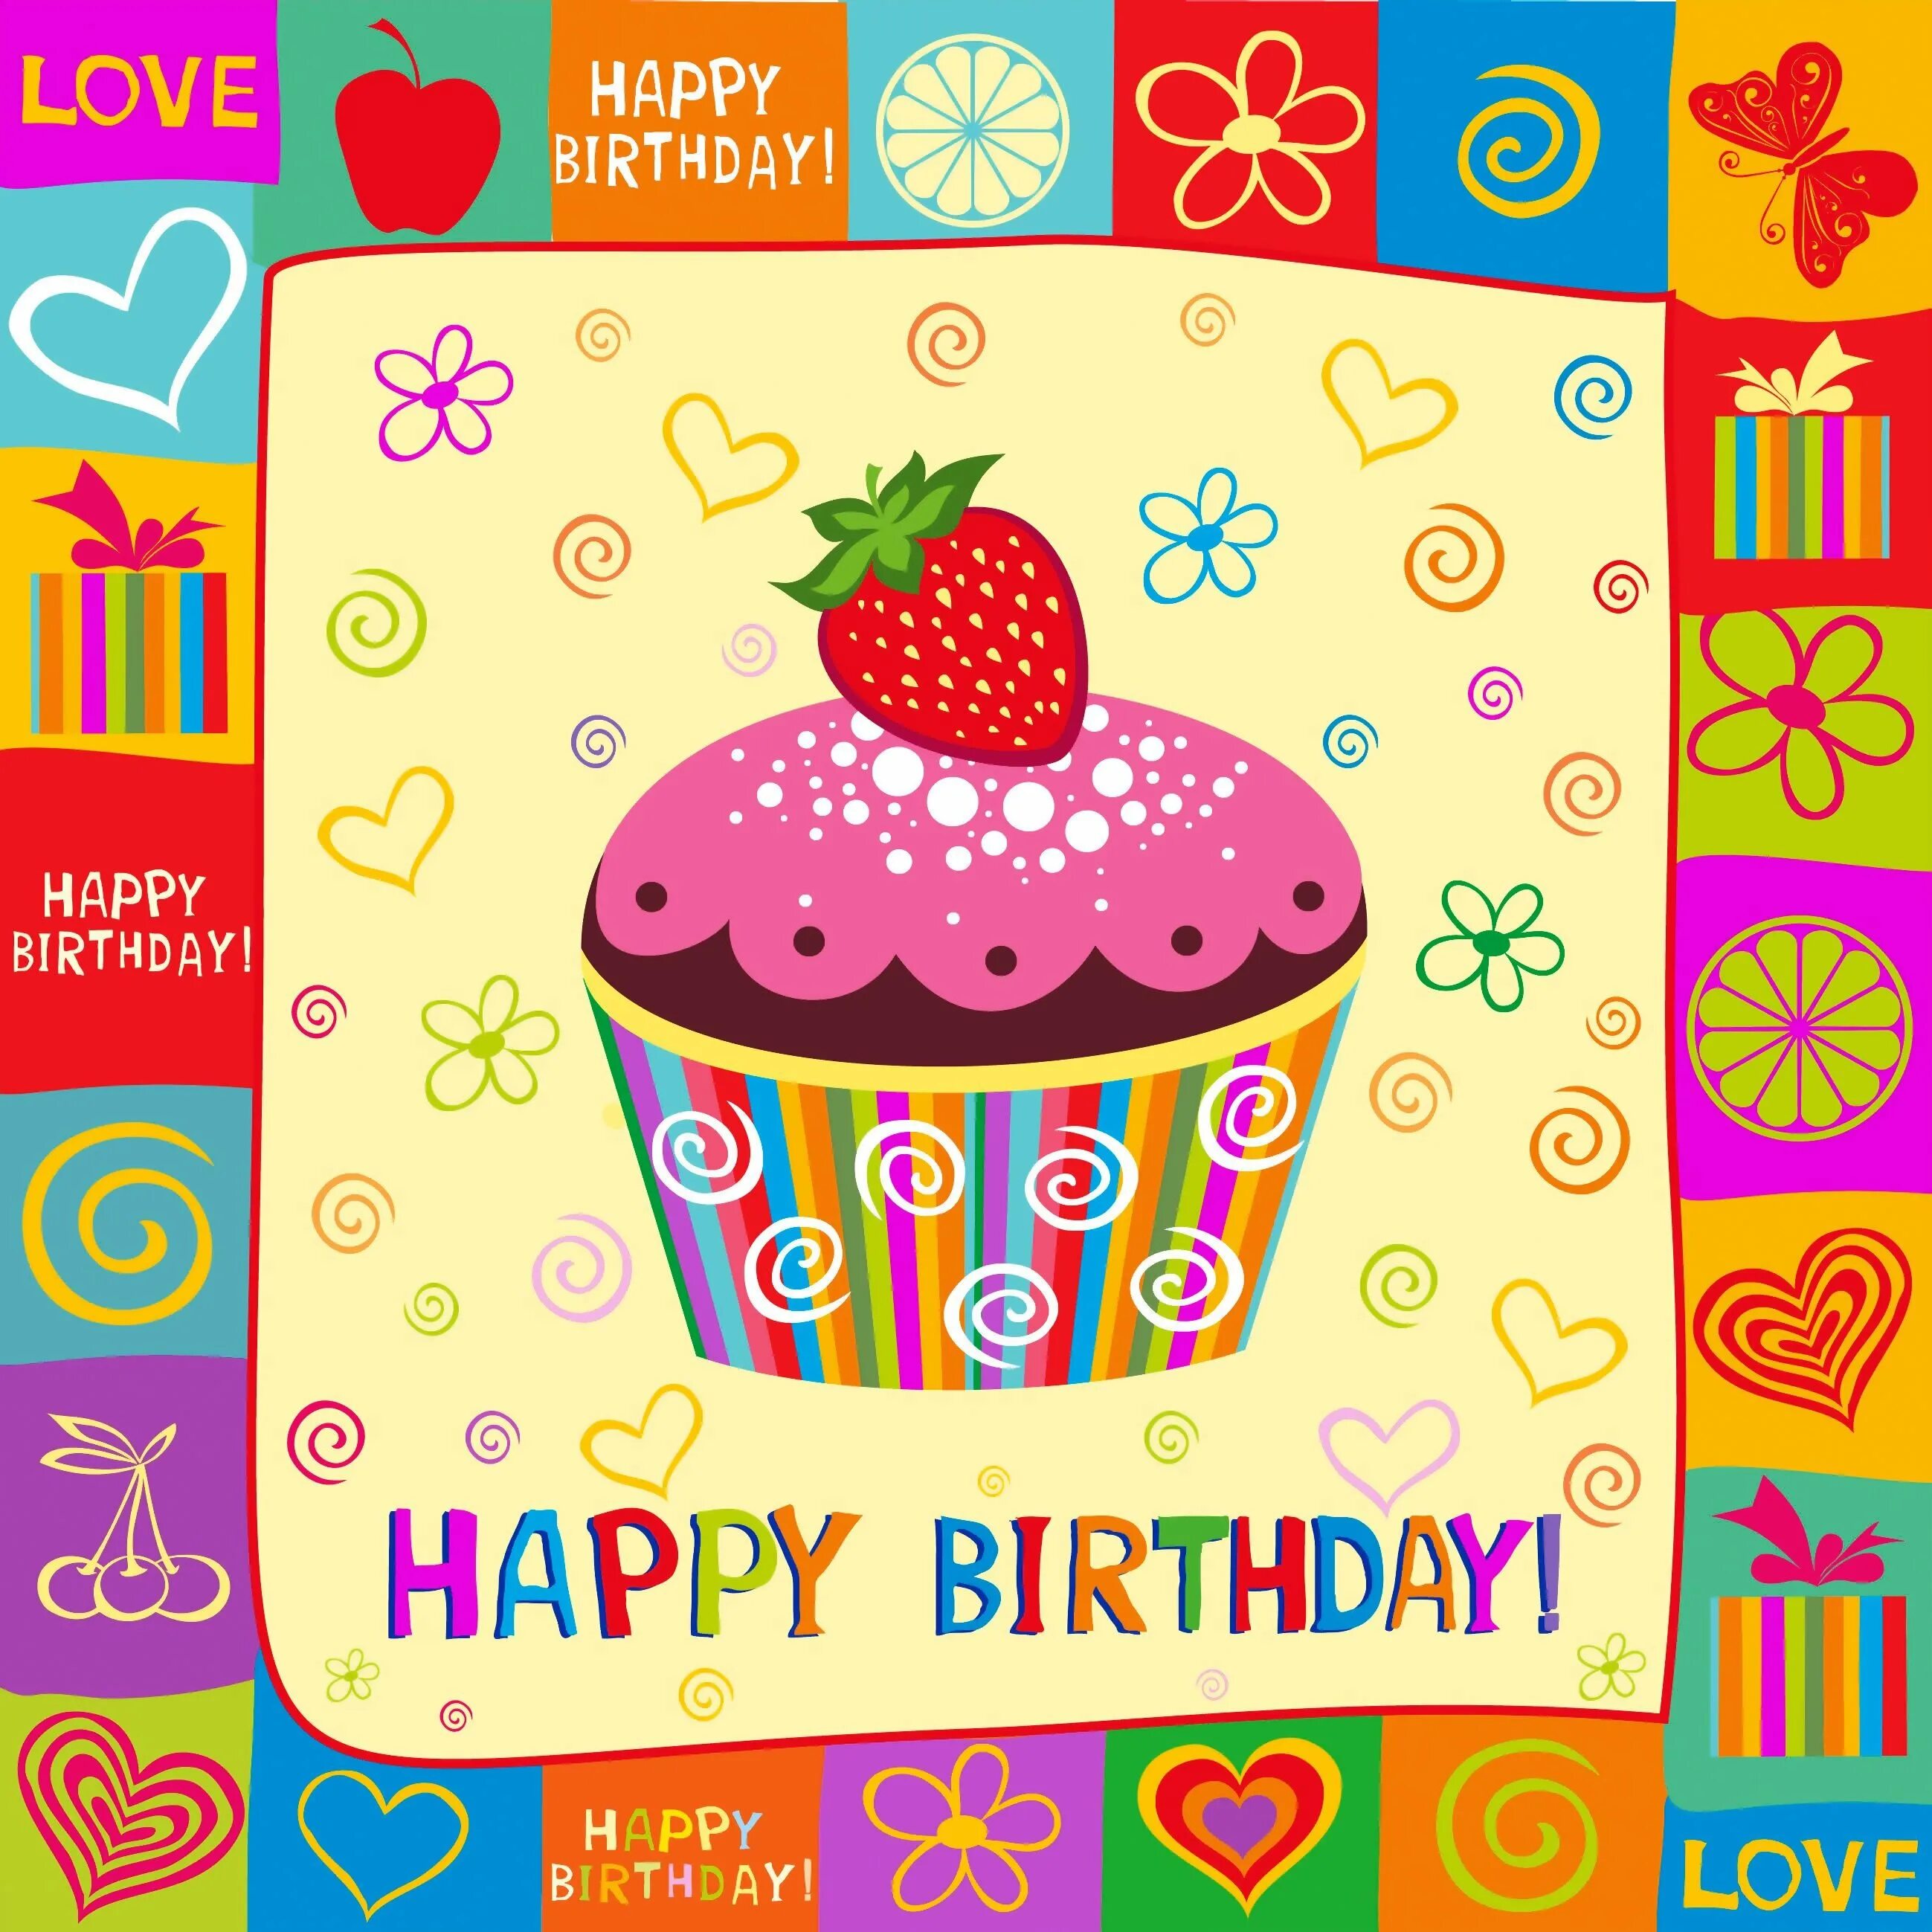 Подбери с днем рождения. Стильные открытки с днем рождения. Открыта с днём рождения. С днем рождения иллюстрация. Стильное поздравление с днем рождения.